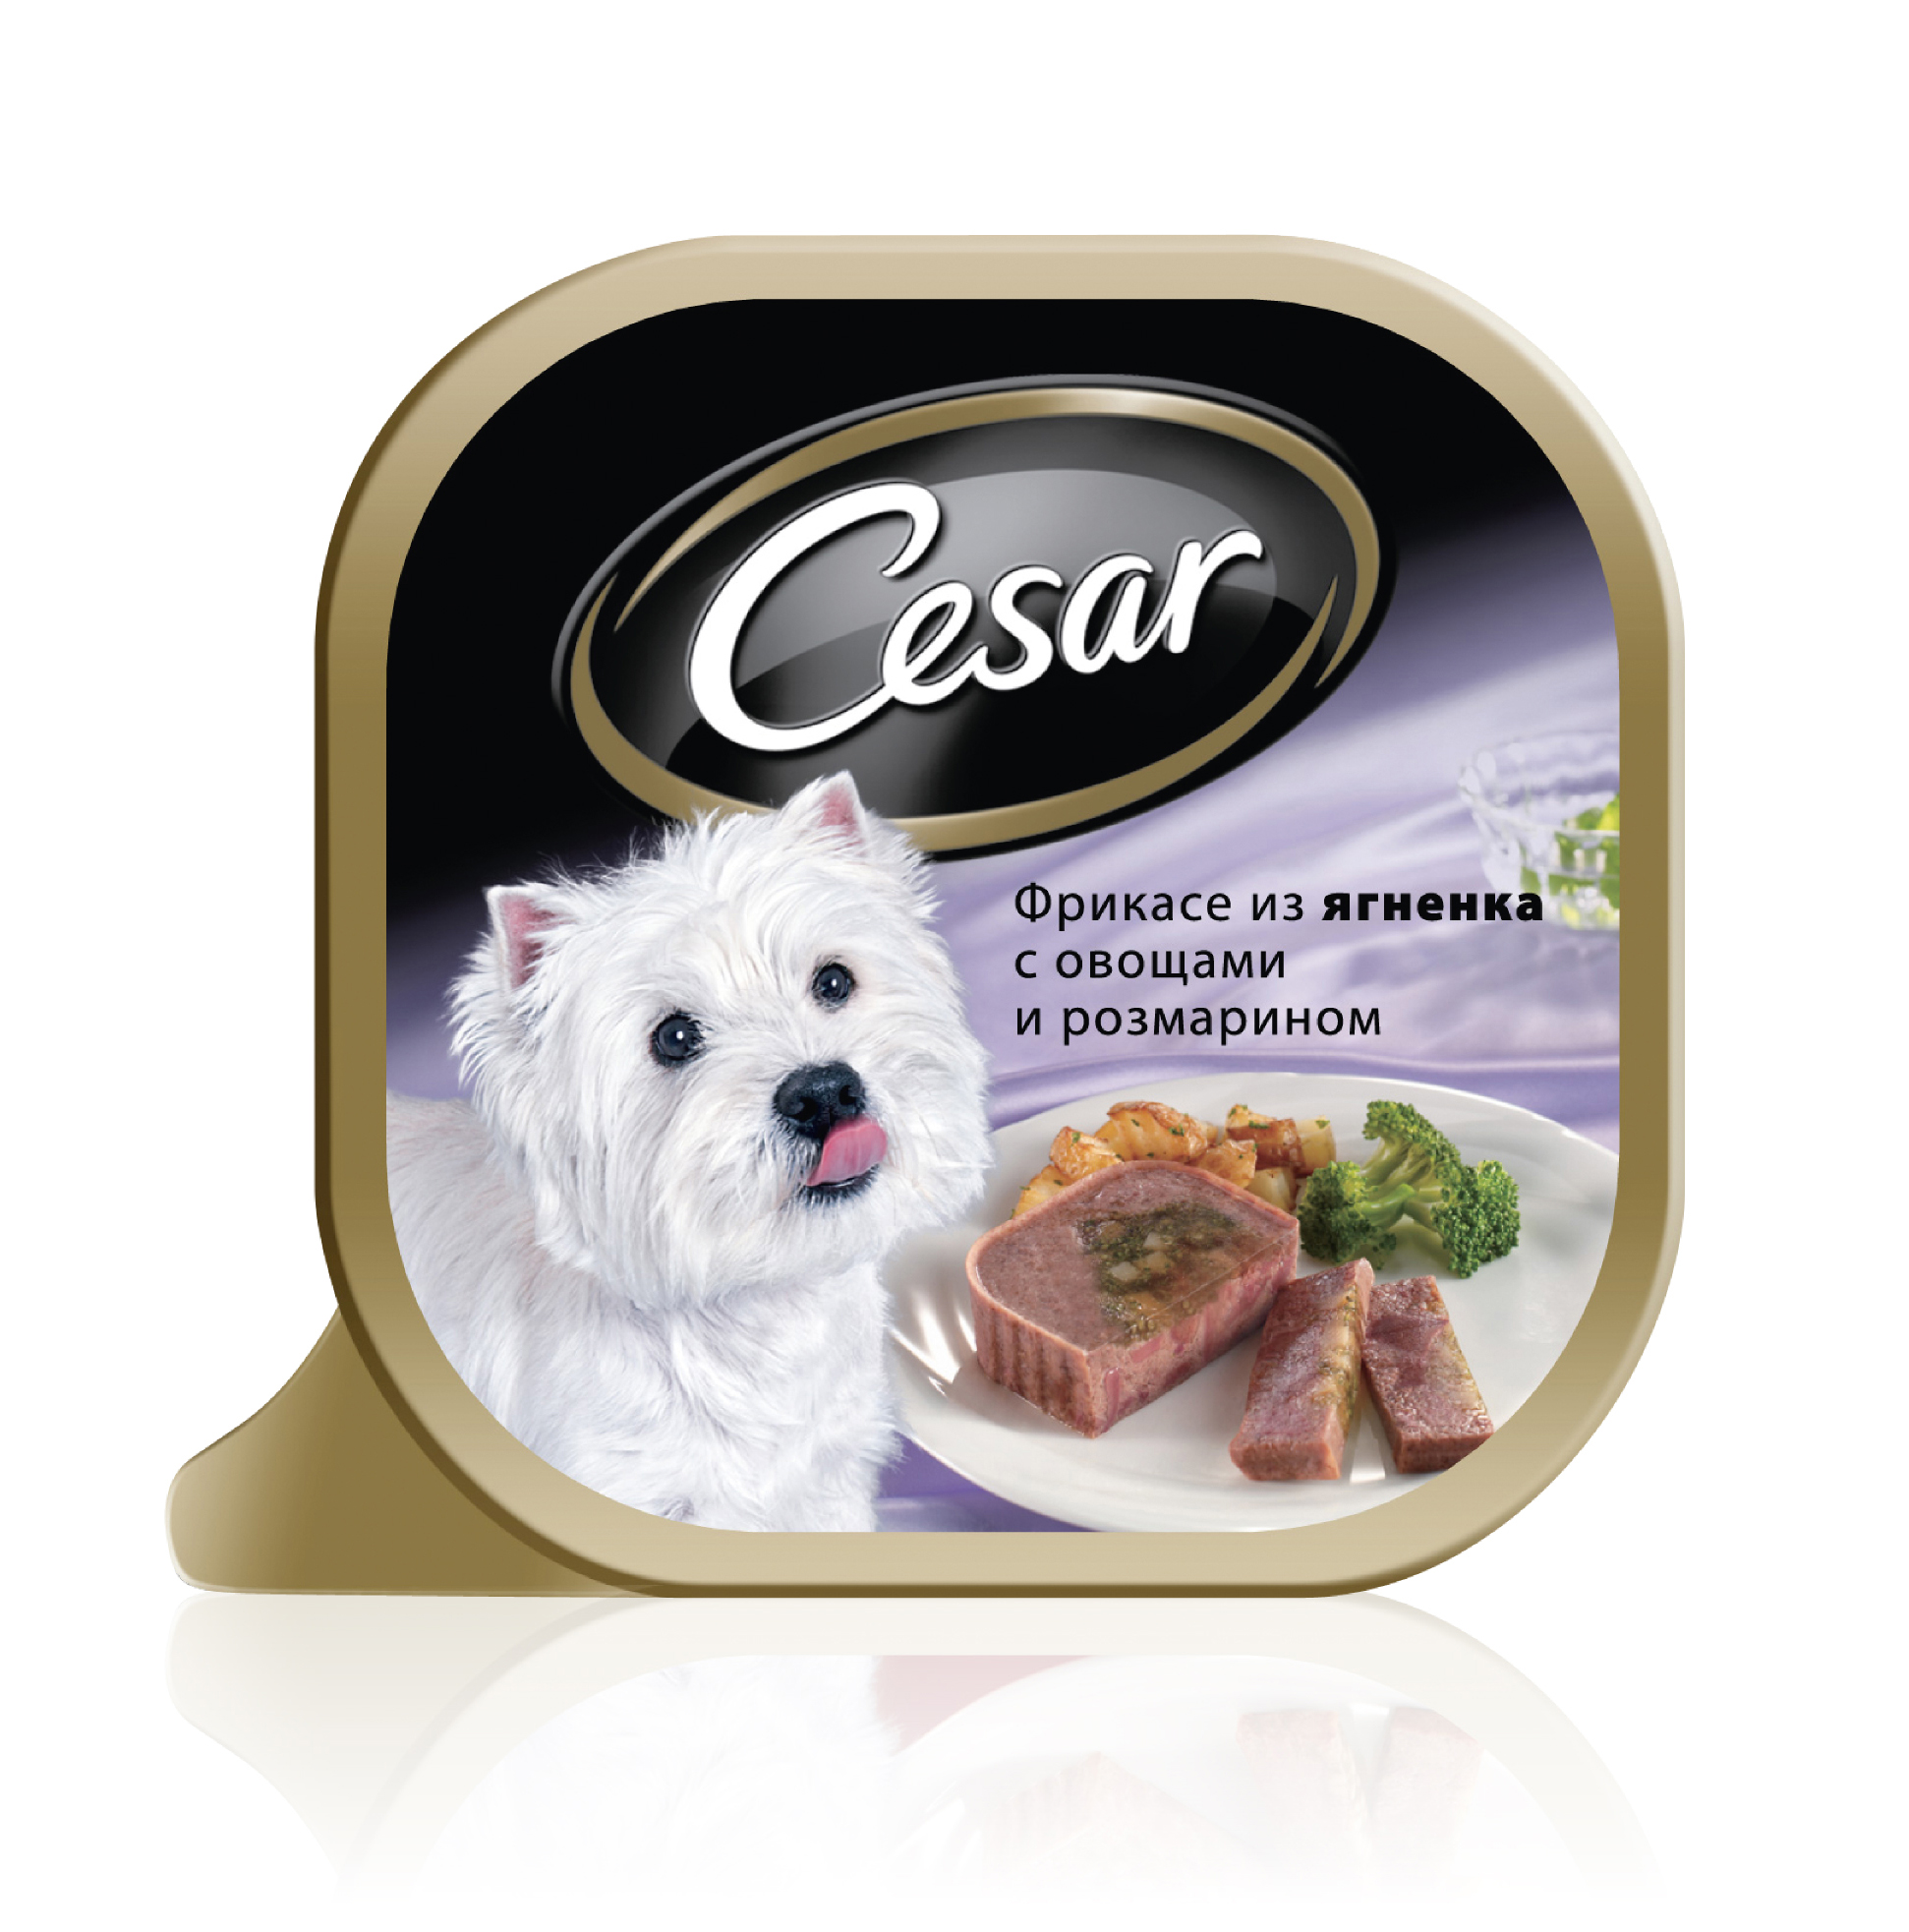 Недорогой магазин кормов для собак. Влажный корм для собак Cesar из говядины с овощами 100г. Cesar консервы для собак. Влажный корм для собак Cesar.